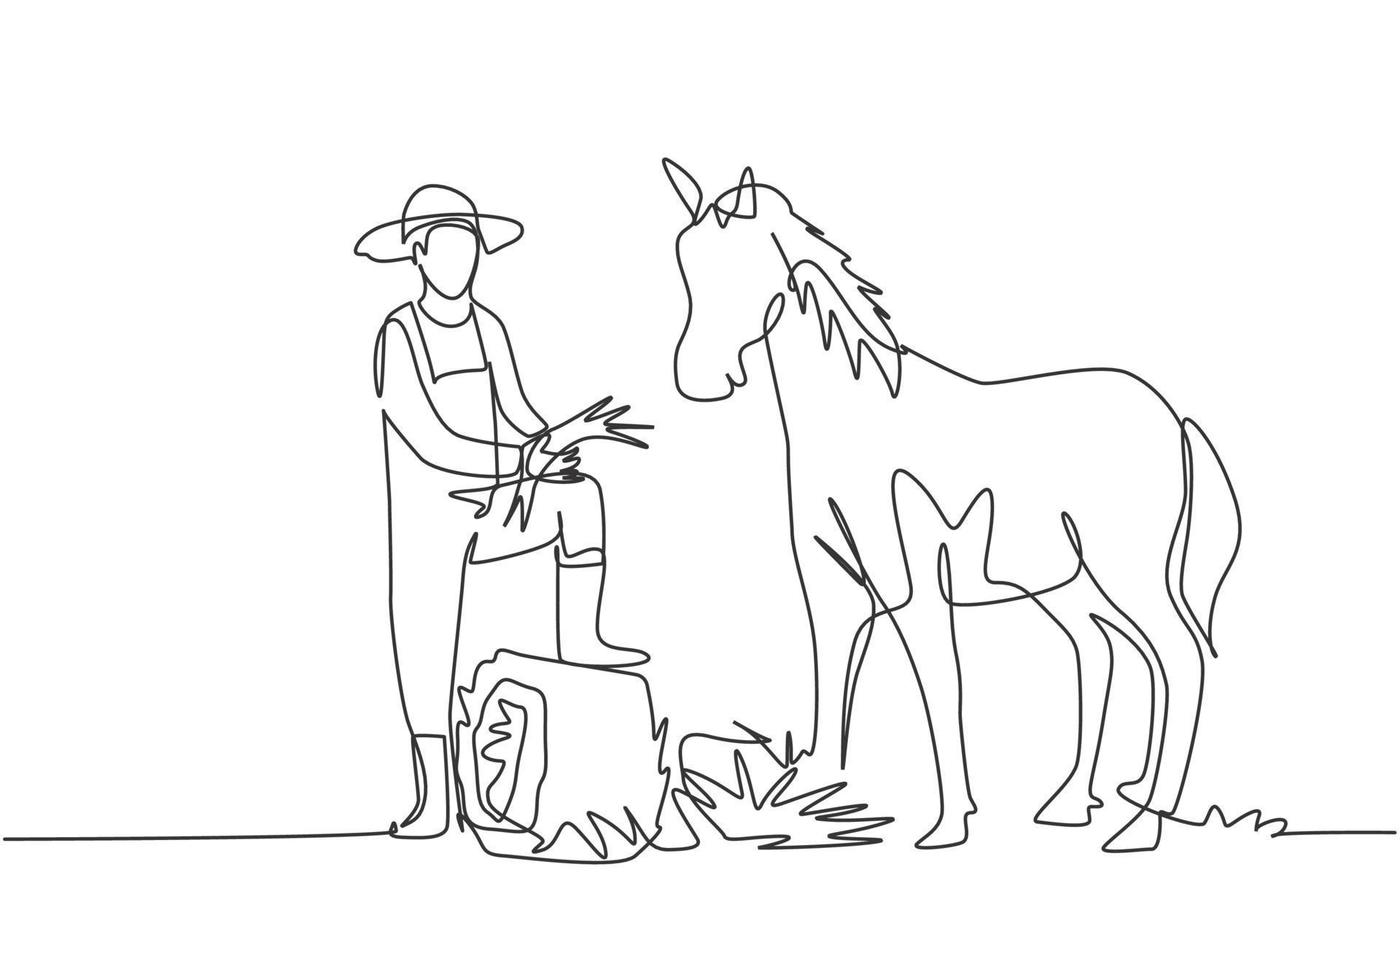 Uma única linha contínua desenhando o jovem agricultor do sexo masculino pisou com um dos pés no feno enrolado quando estava prestes a alimentar o cavalo. conceito de minimalismo. uma linha desenhar ilustração em vetor design gráfico.